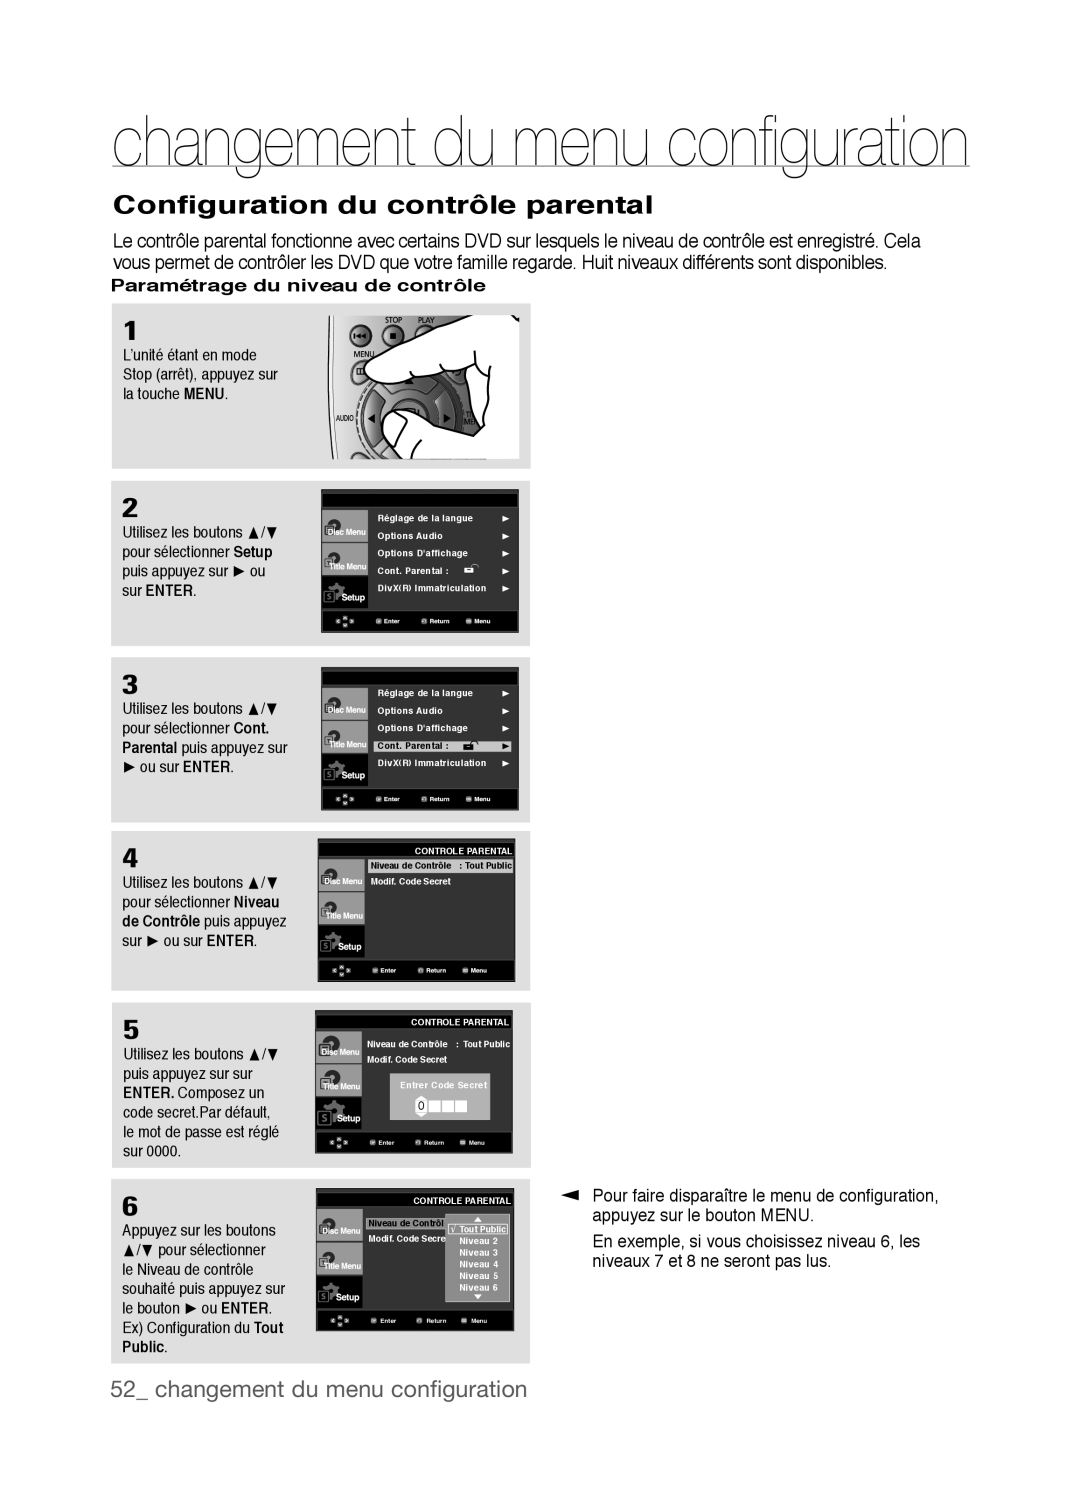 Samsung DVD-P390 Configuration du contrôle parental, changement du menu conﬁguration, changement du menu conﬁ guration 